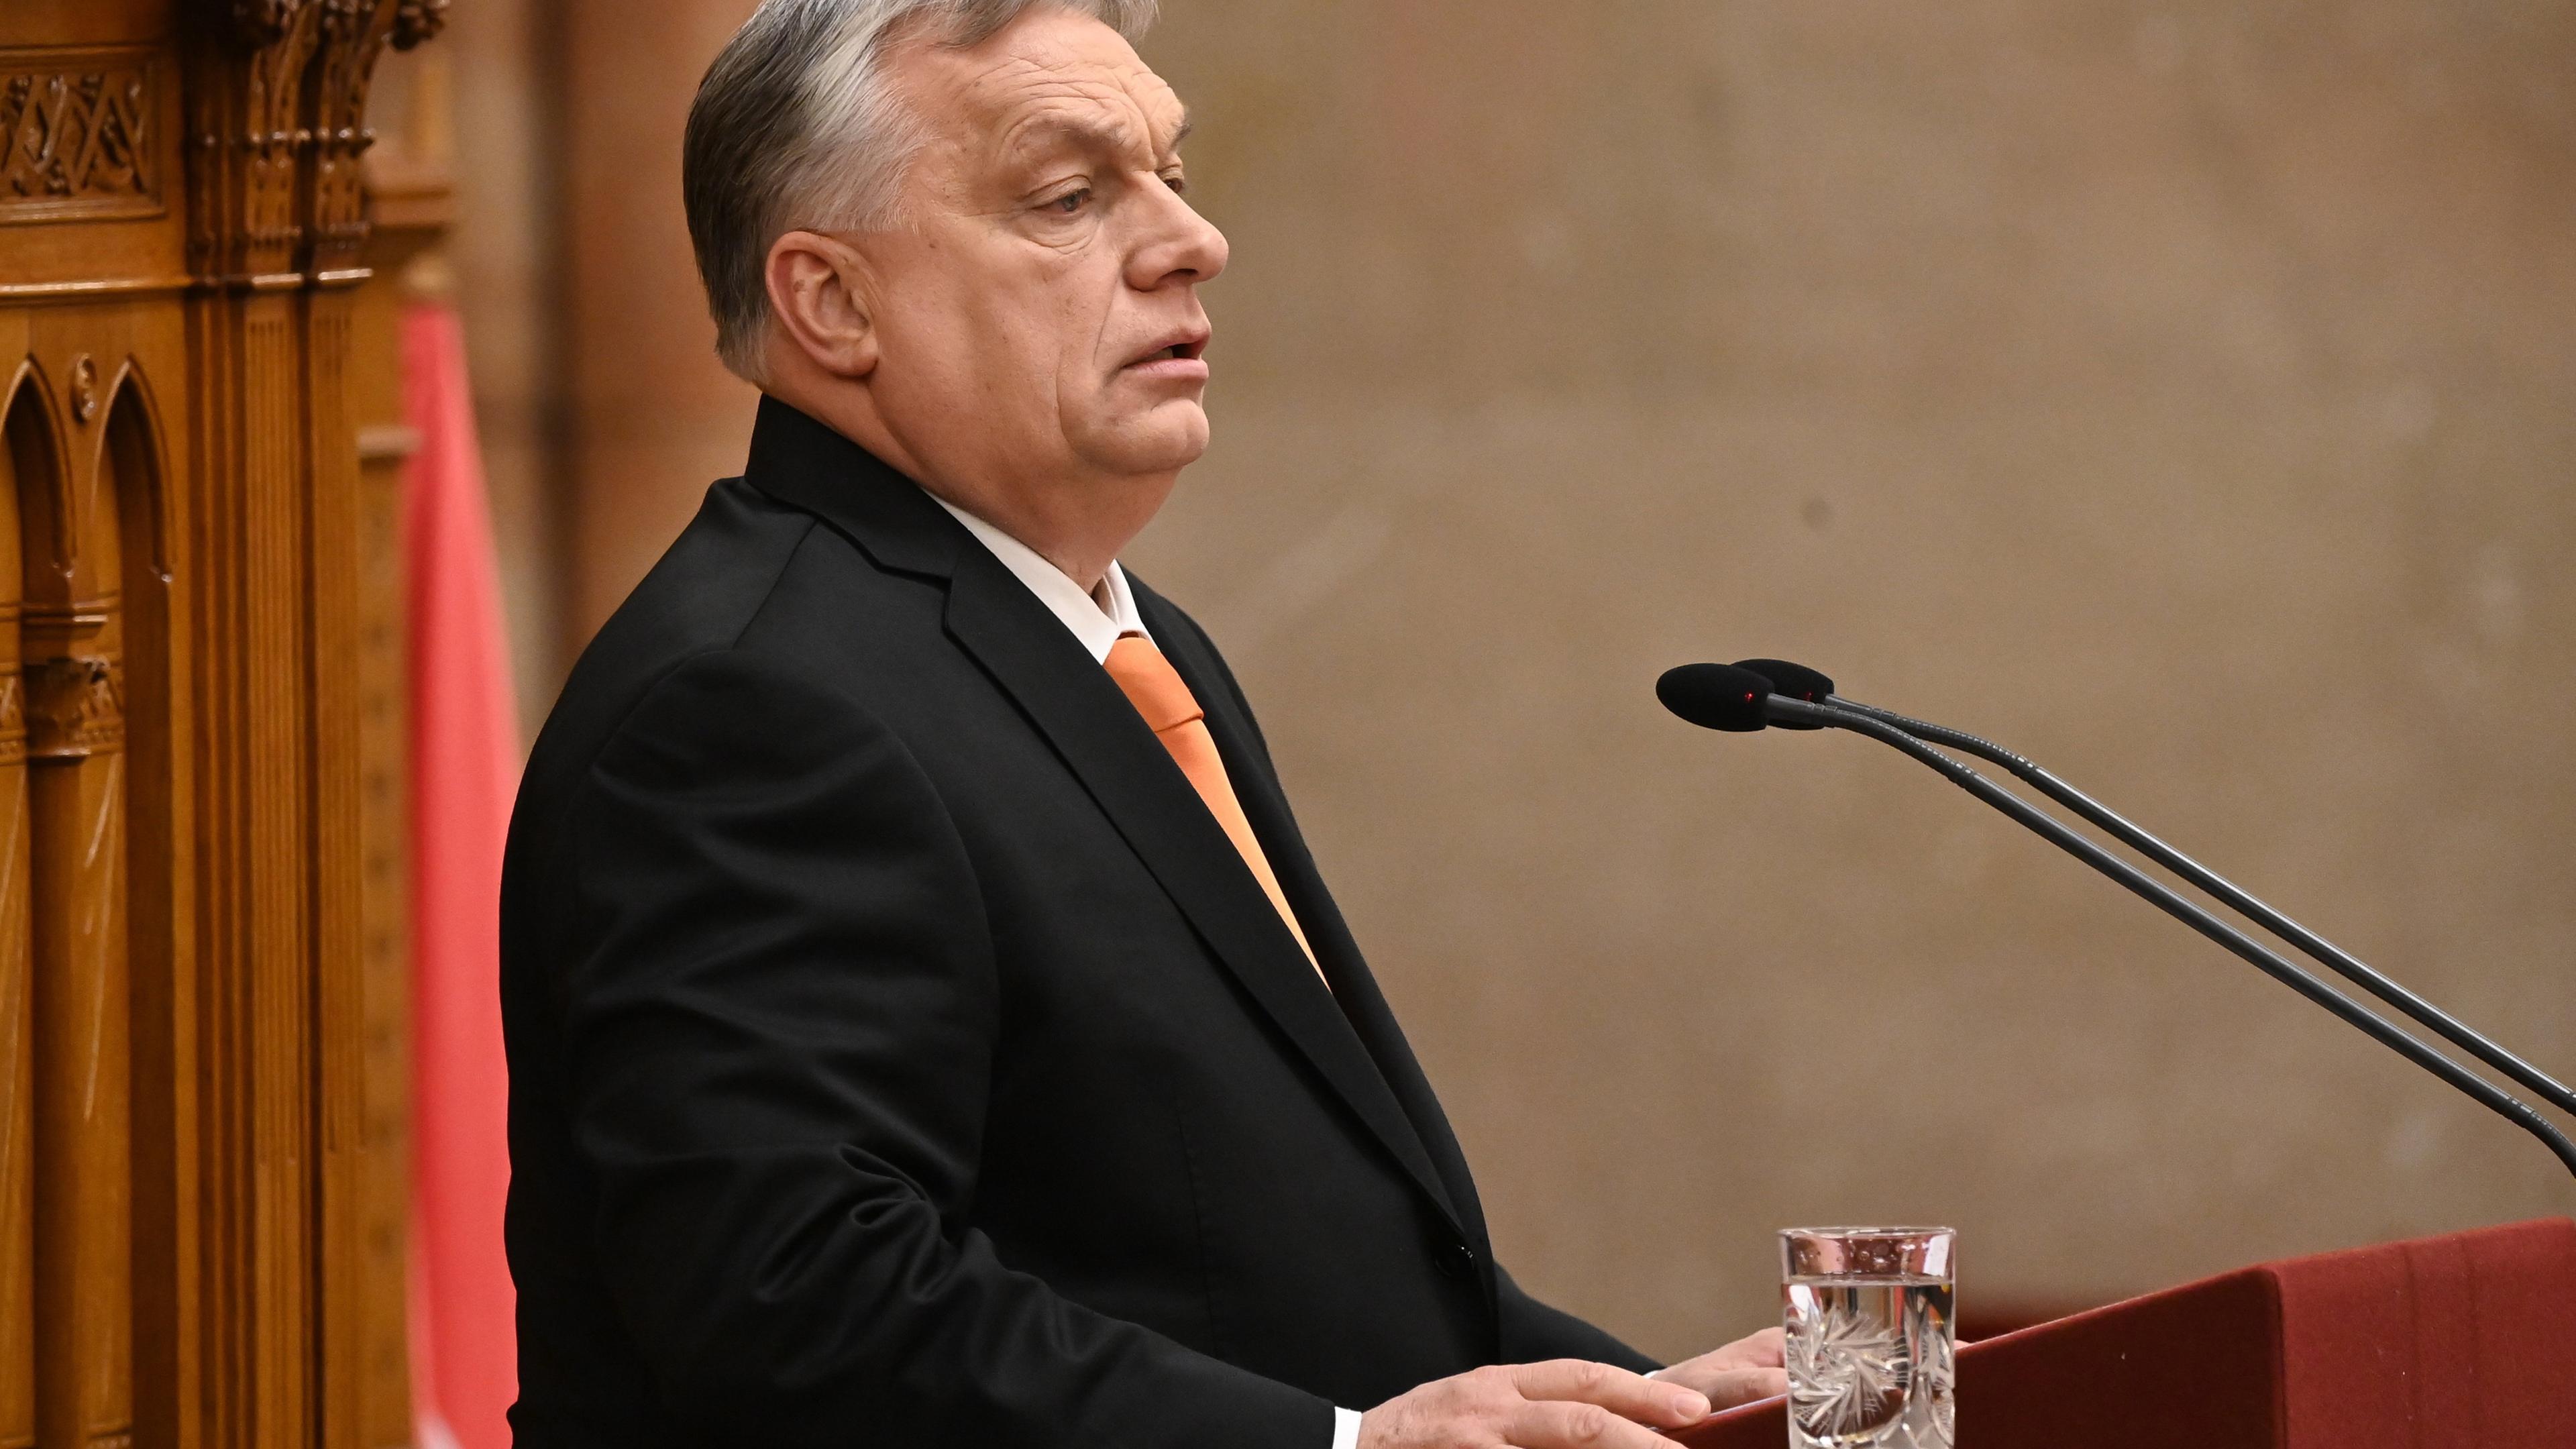 Der ungarische Präsident Viktor Orbán eröffnet an einem Rednerpult eine Sitzung des Parlaments in Ungarn.